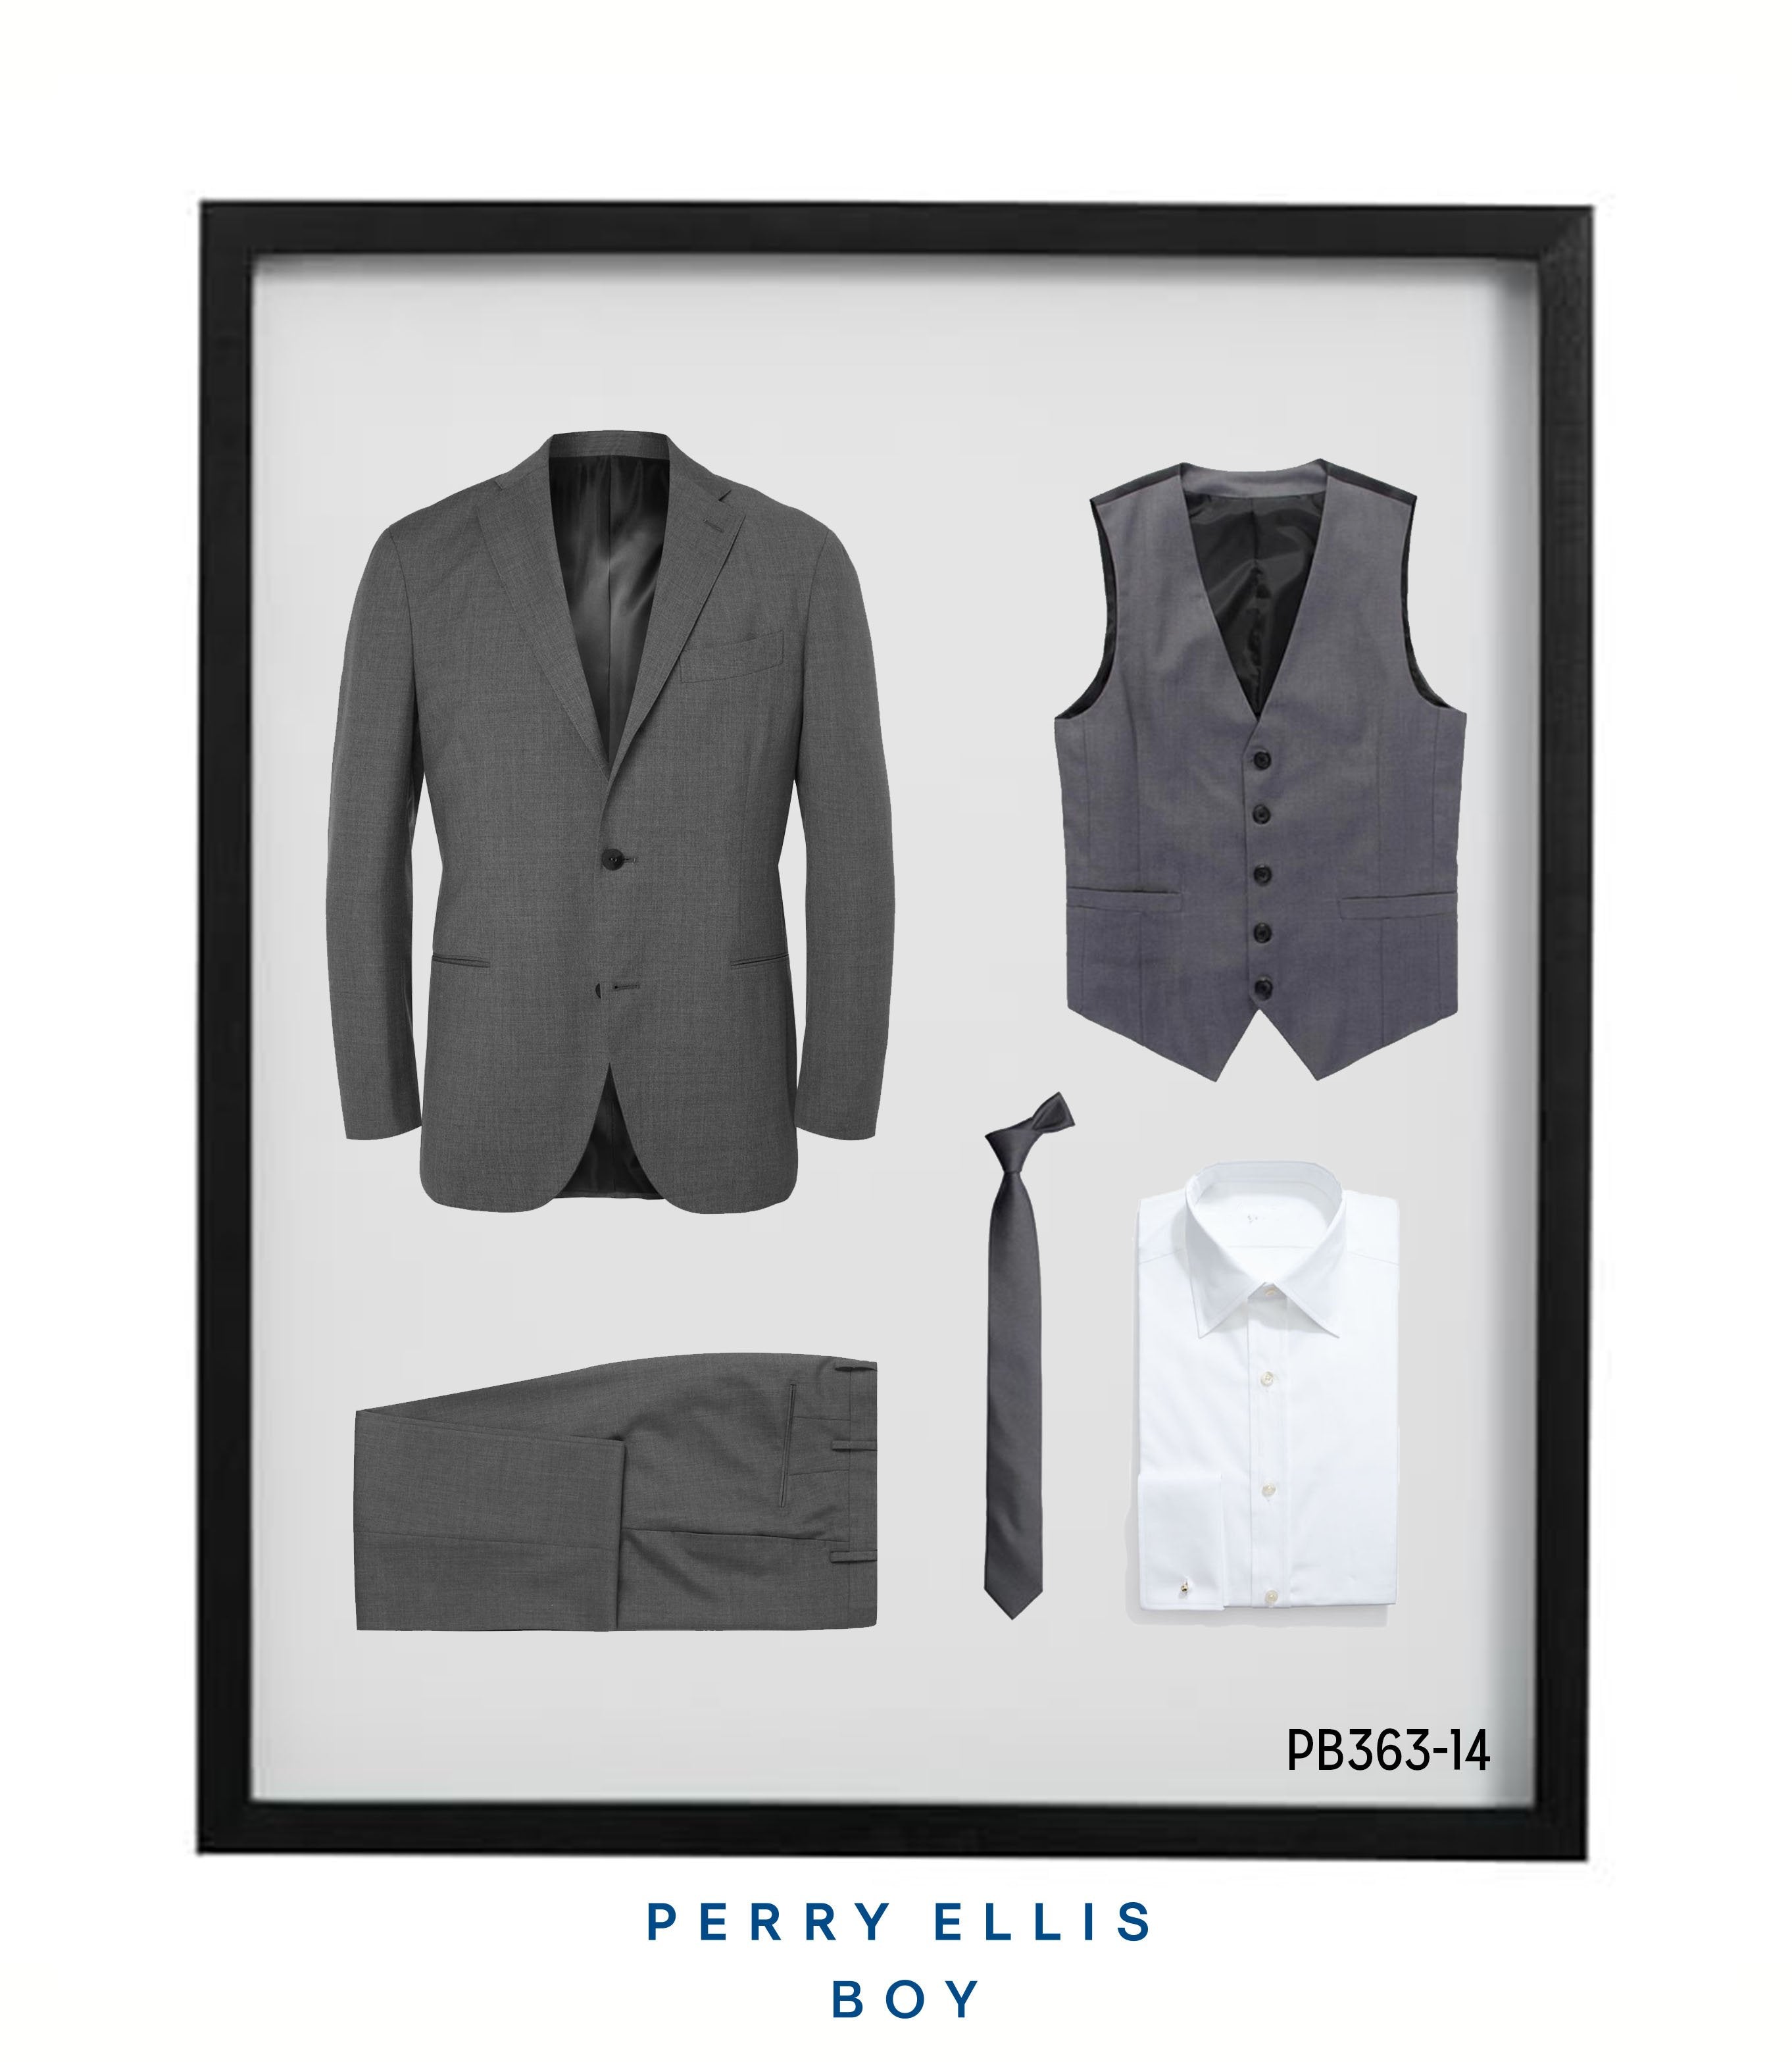 Perry Ellis Boys Suit Light Grey Suits For Boy's